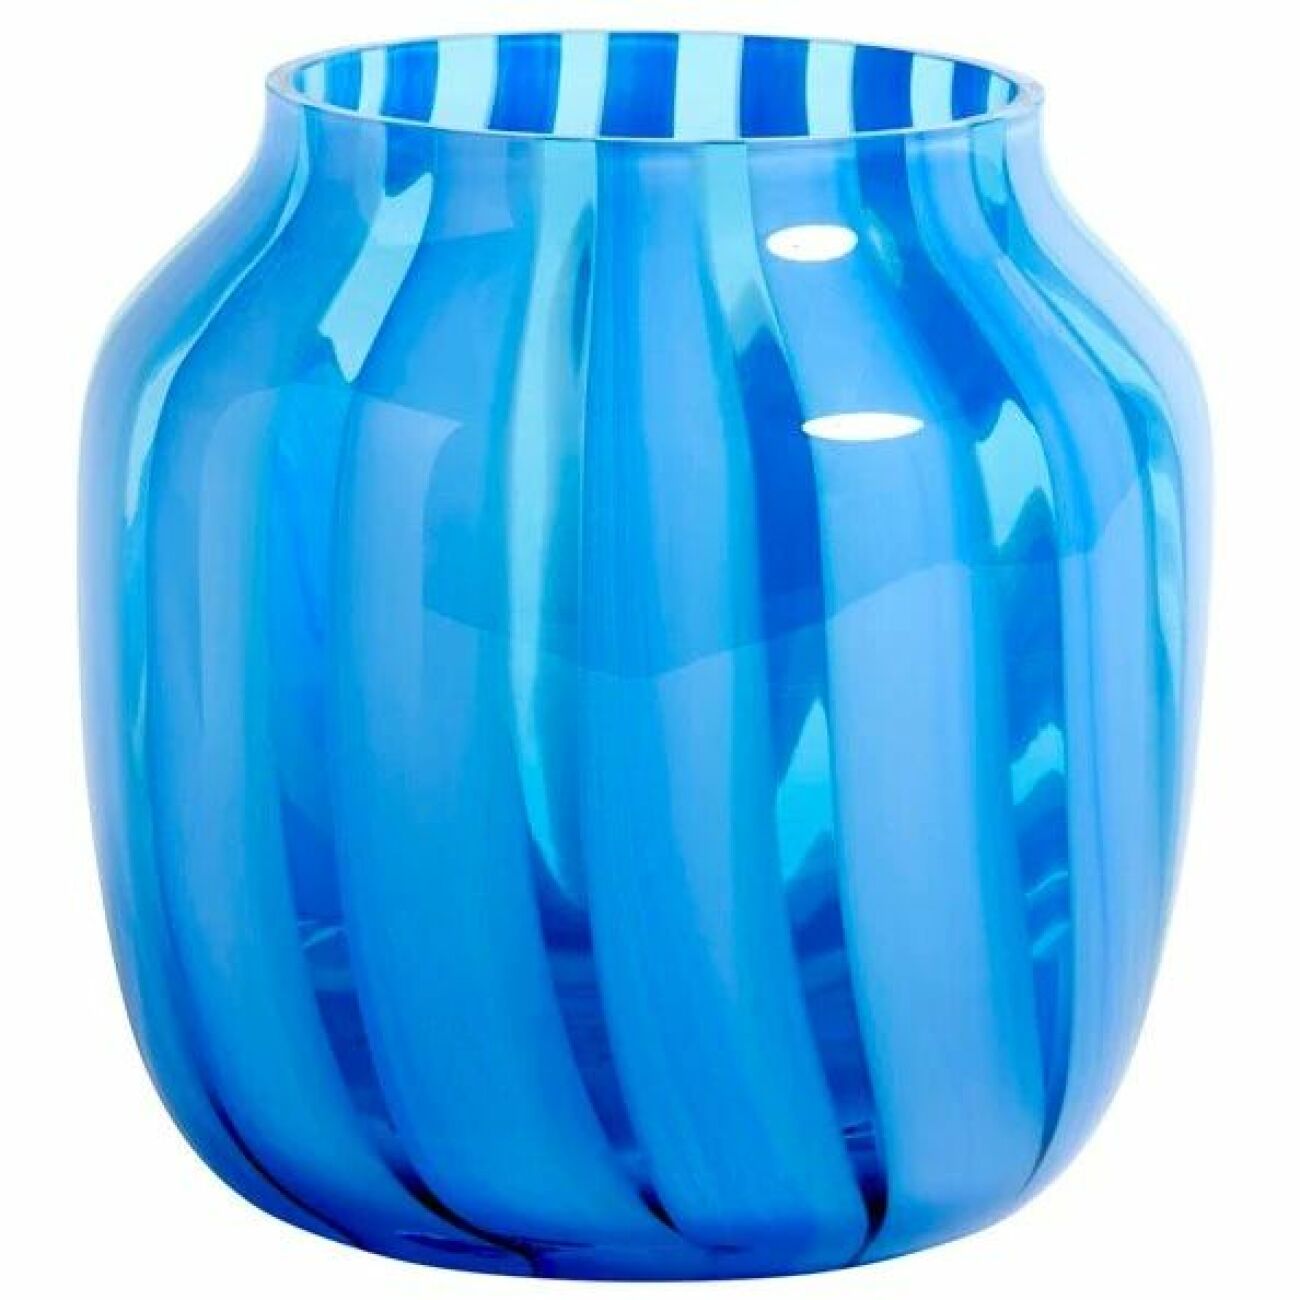 10. Ljusblå vas från Hay